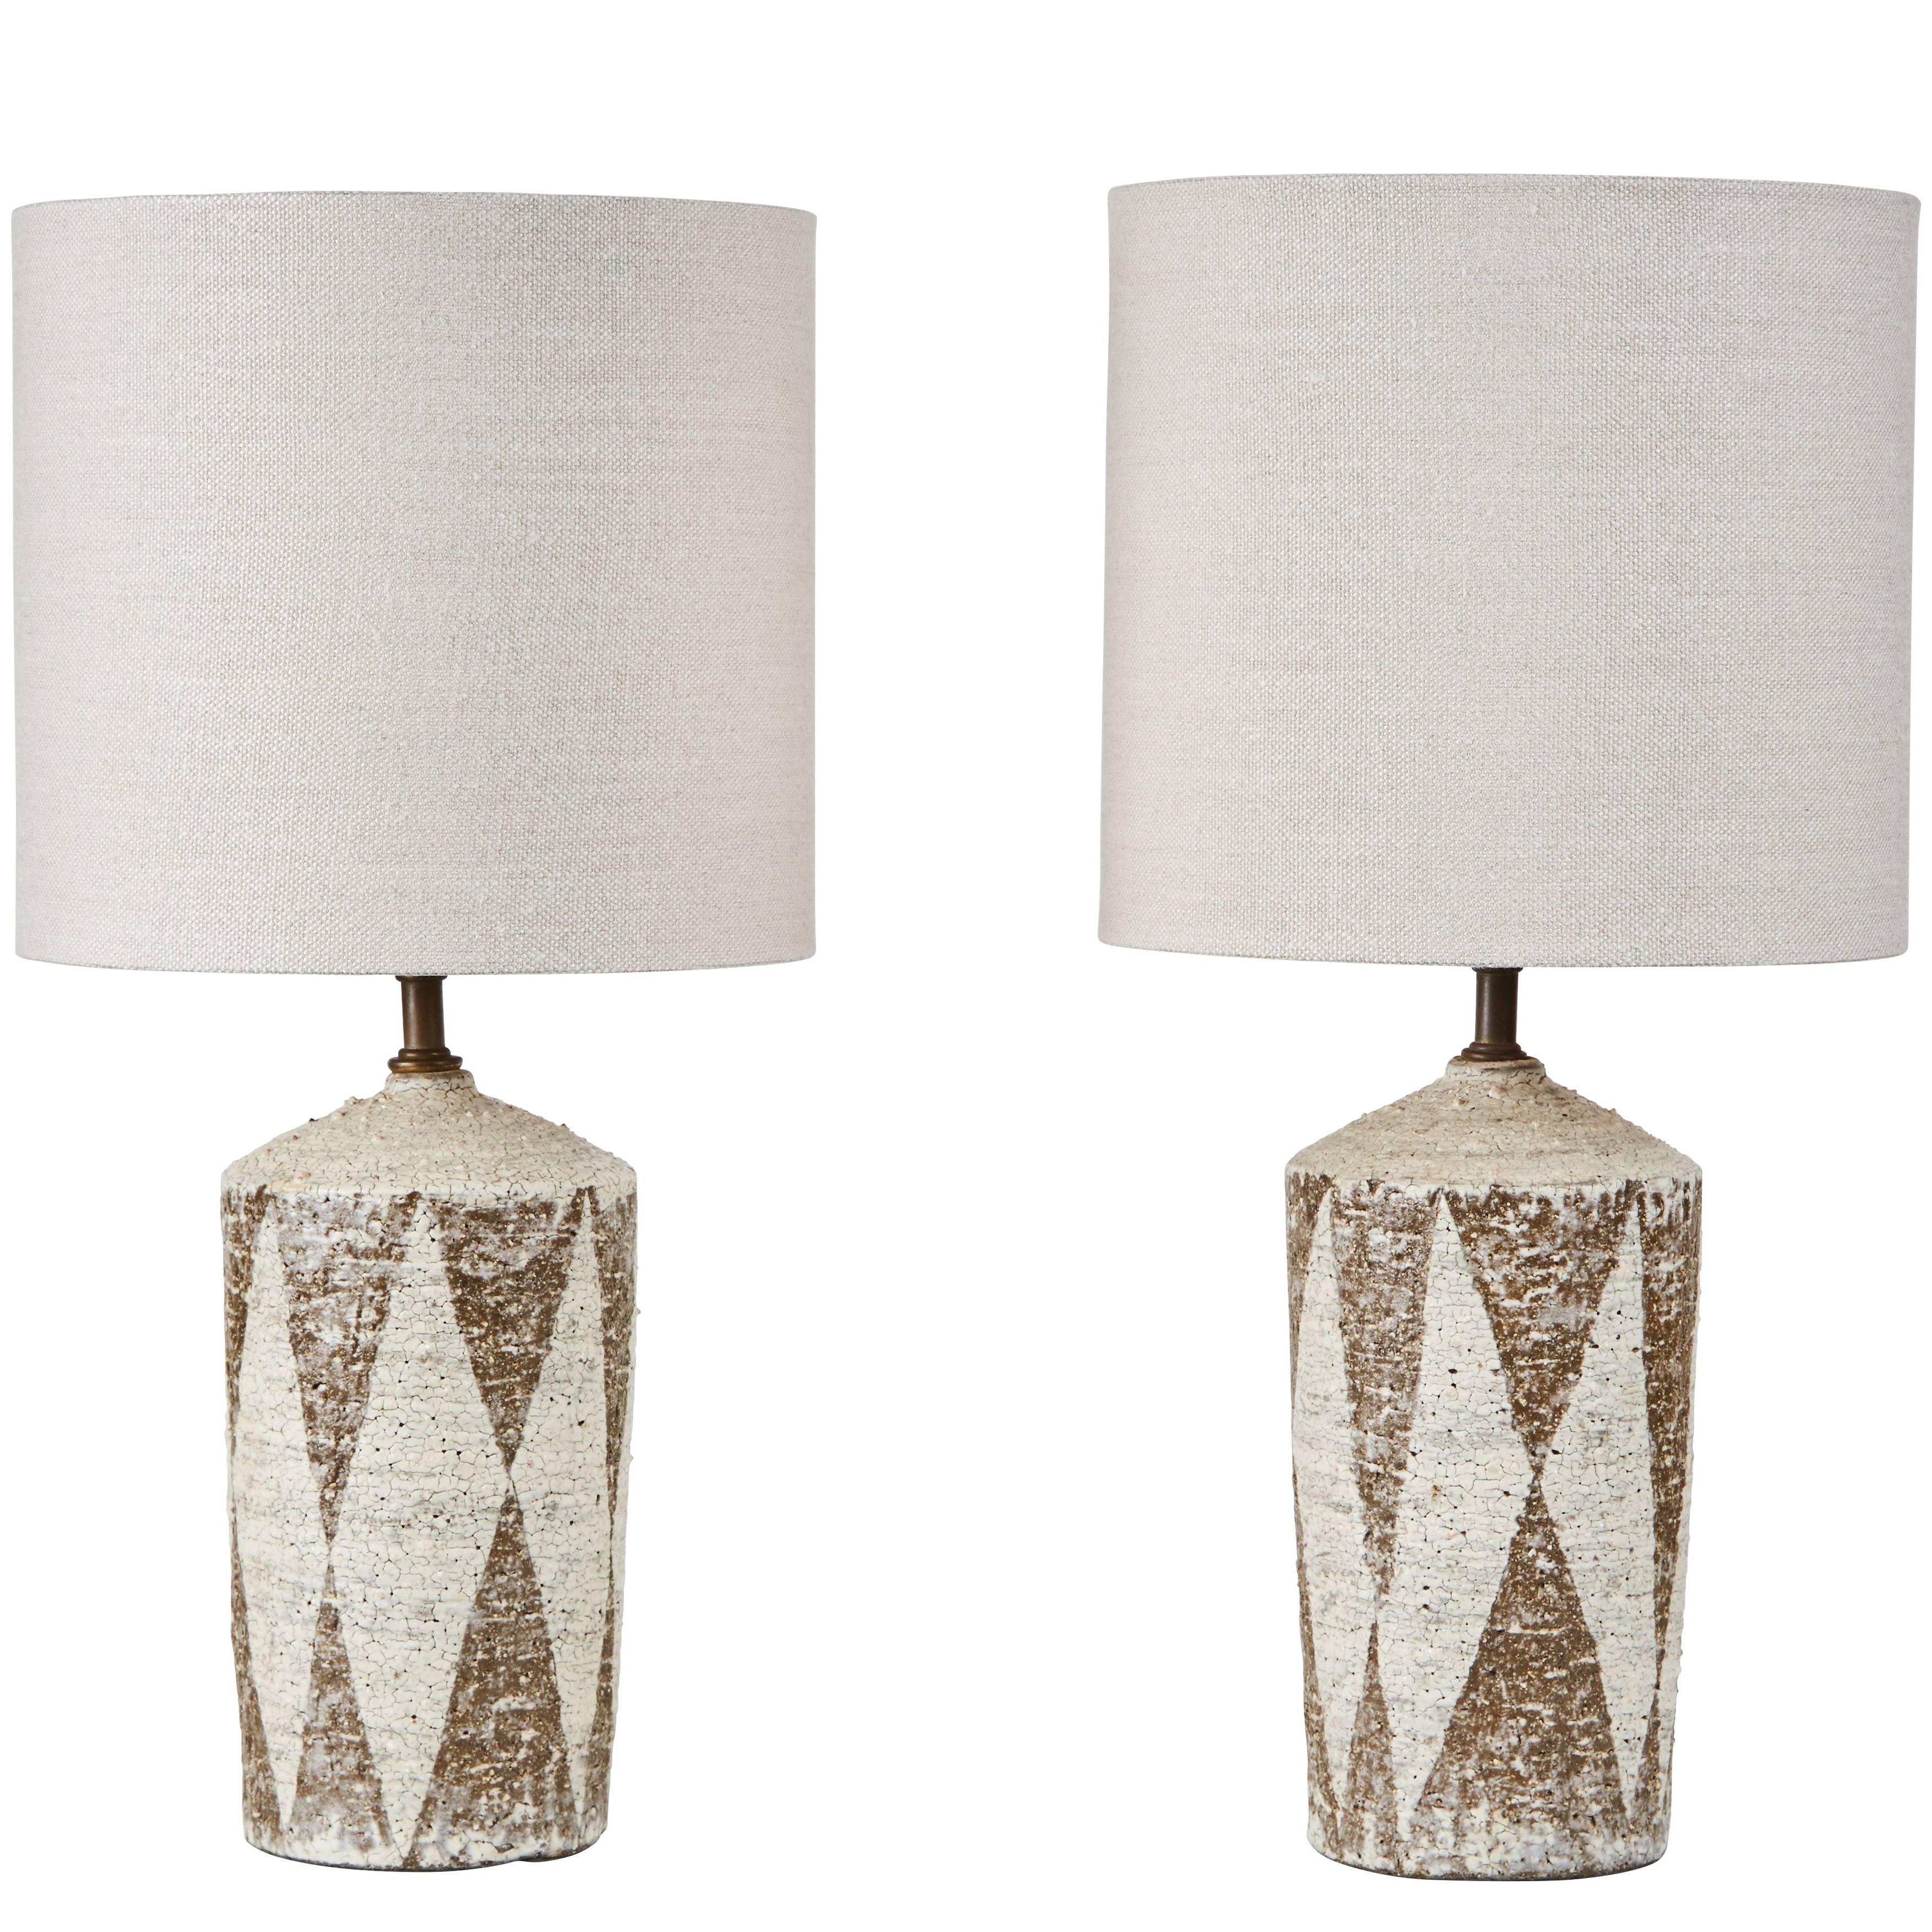 Pair of American Studio Ceramic Table Lamps